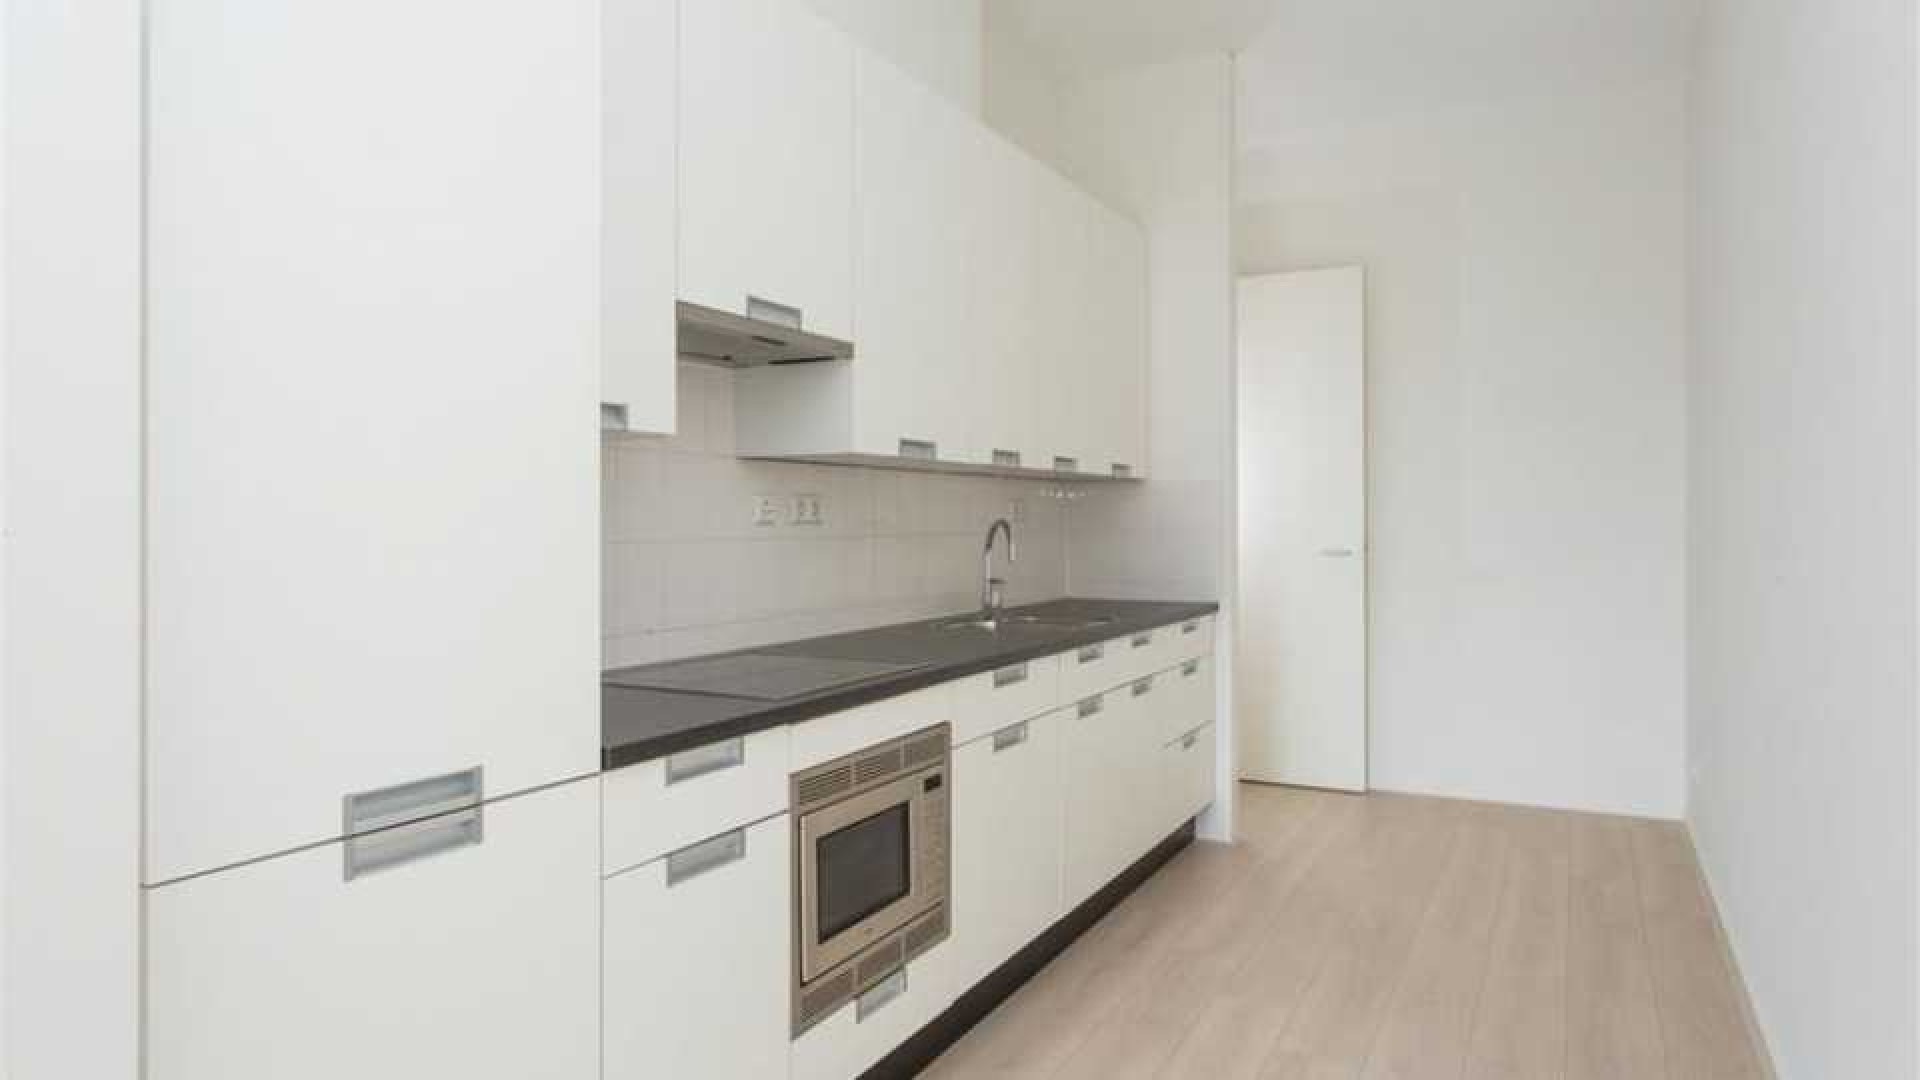 Ajax voetballer Joel Veltman huurt zeer luxe appartement aan de Zuid As in Amsterdam. Zie foto's 9